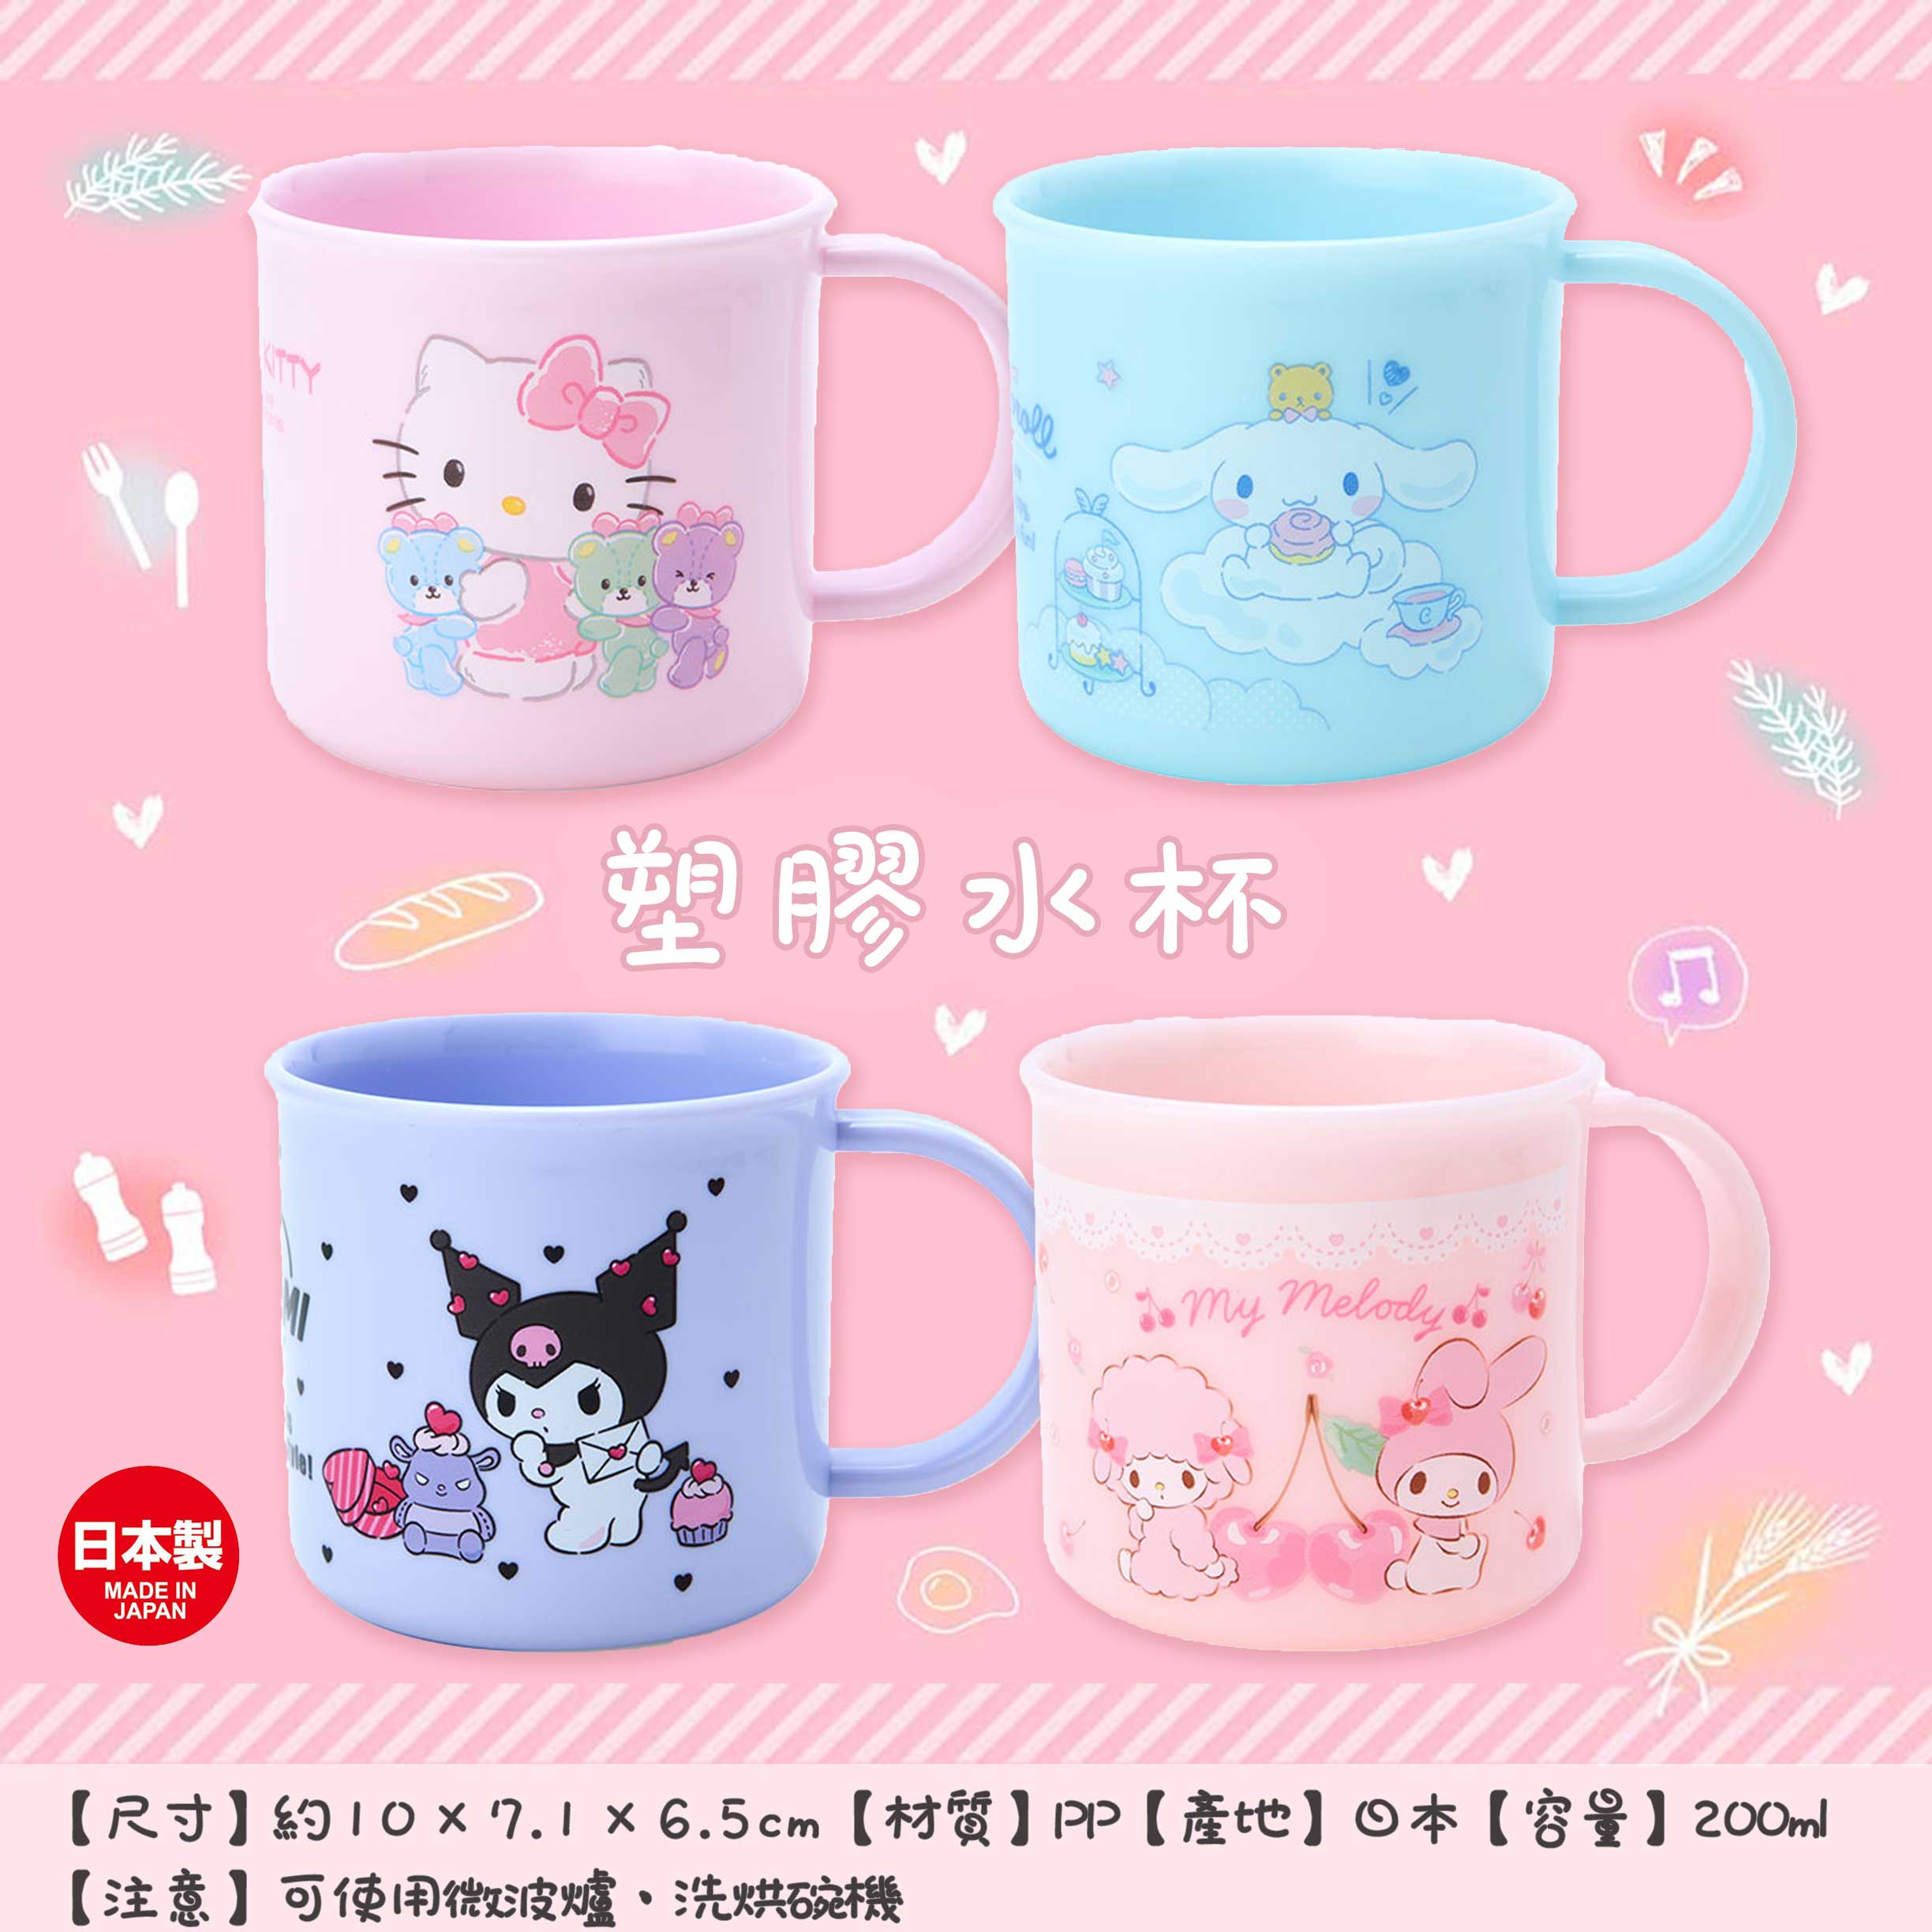 塑膠水杯-三麗鷗 Sanrio 日本進口正版授權